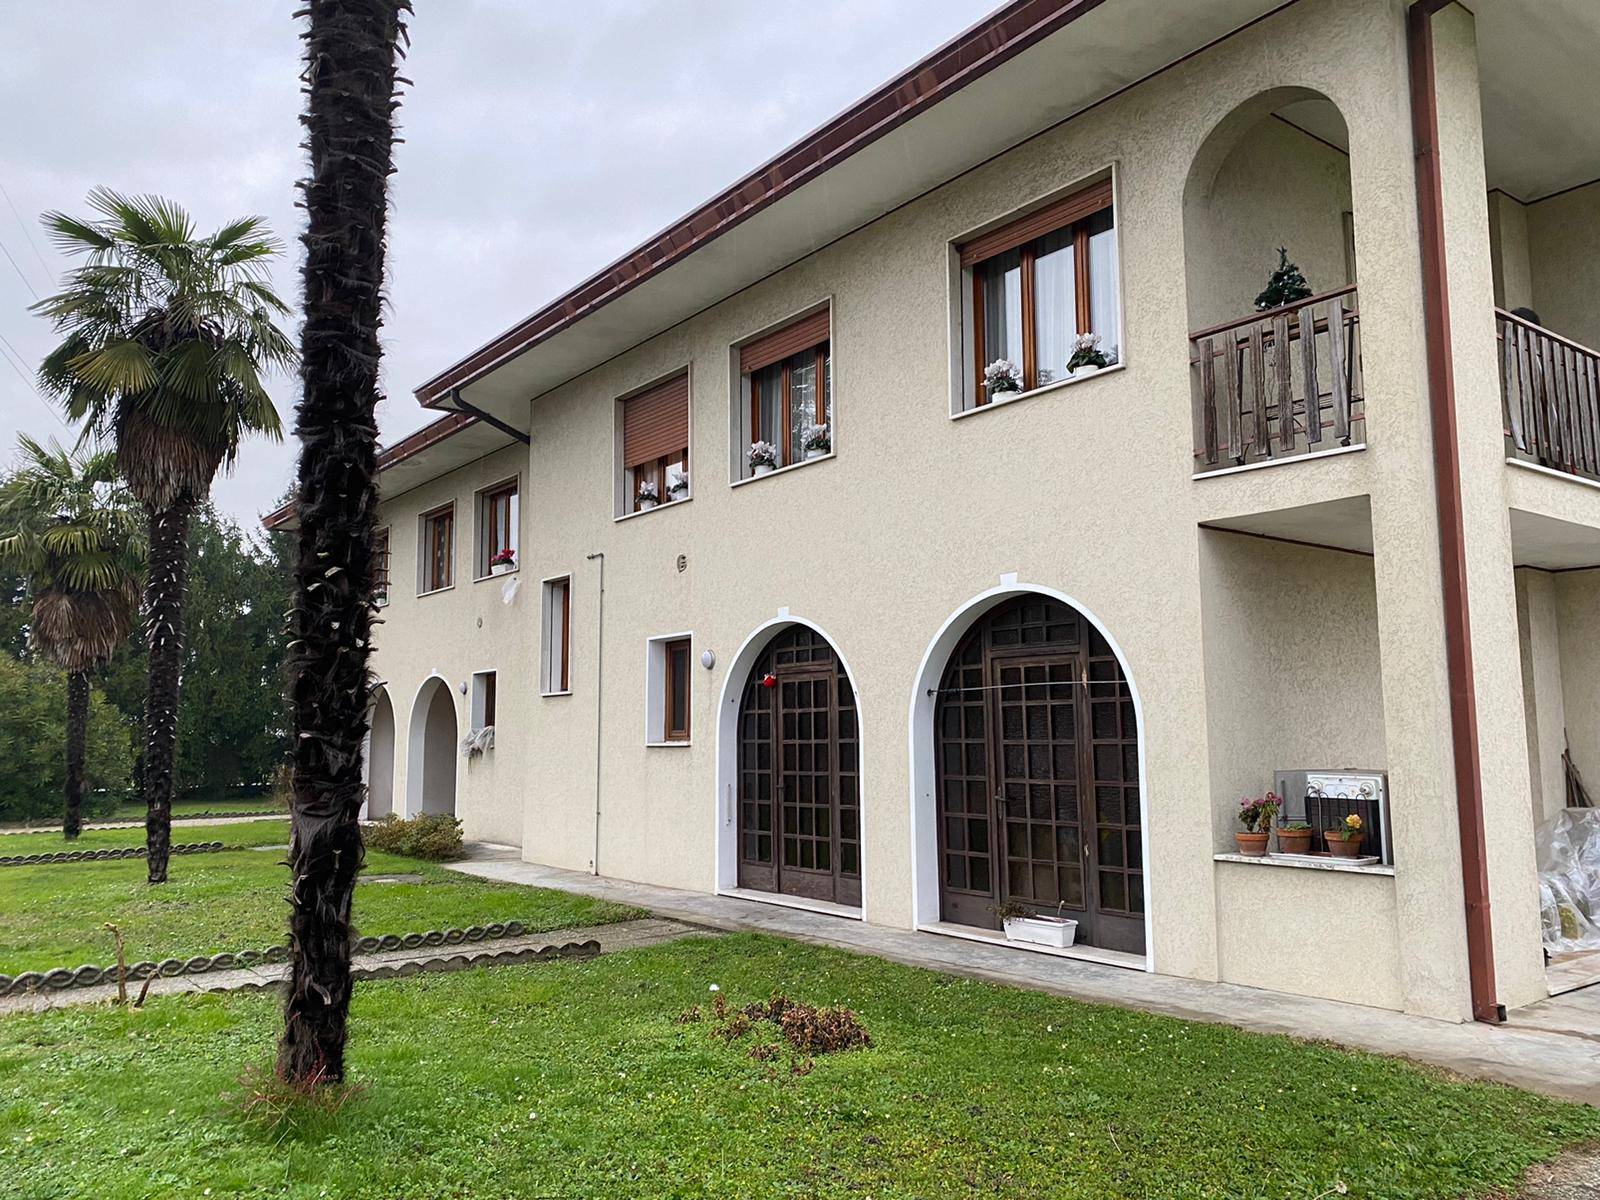 Villa Bifamiliare in vendita a Preganziol, 10 locali, prezzo € 340.000 | CambioCasa.it